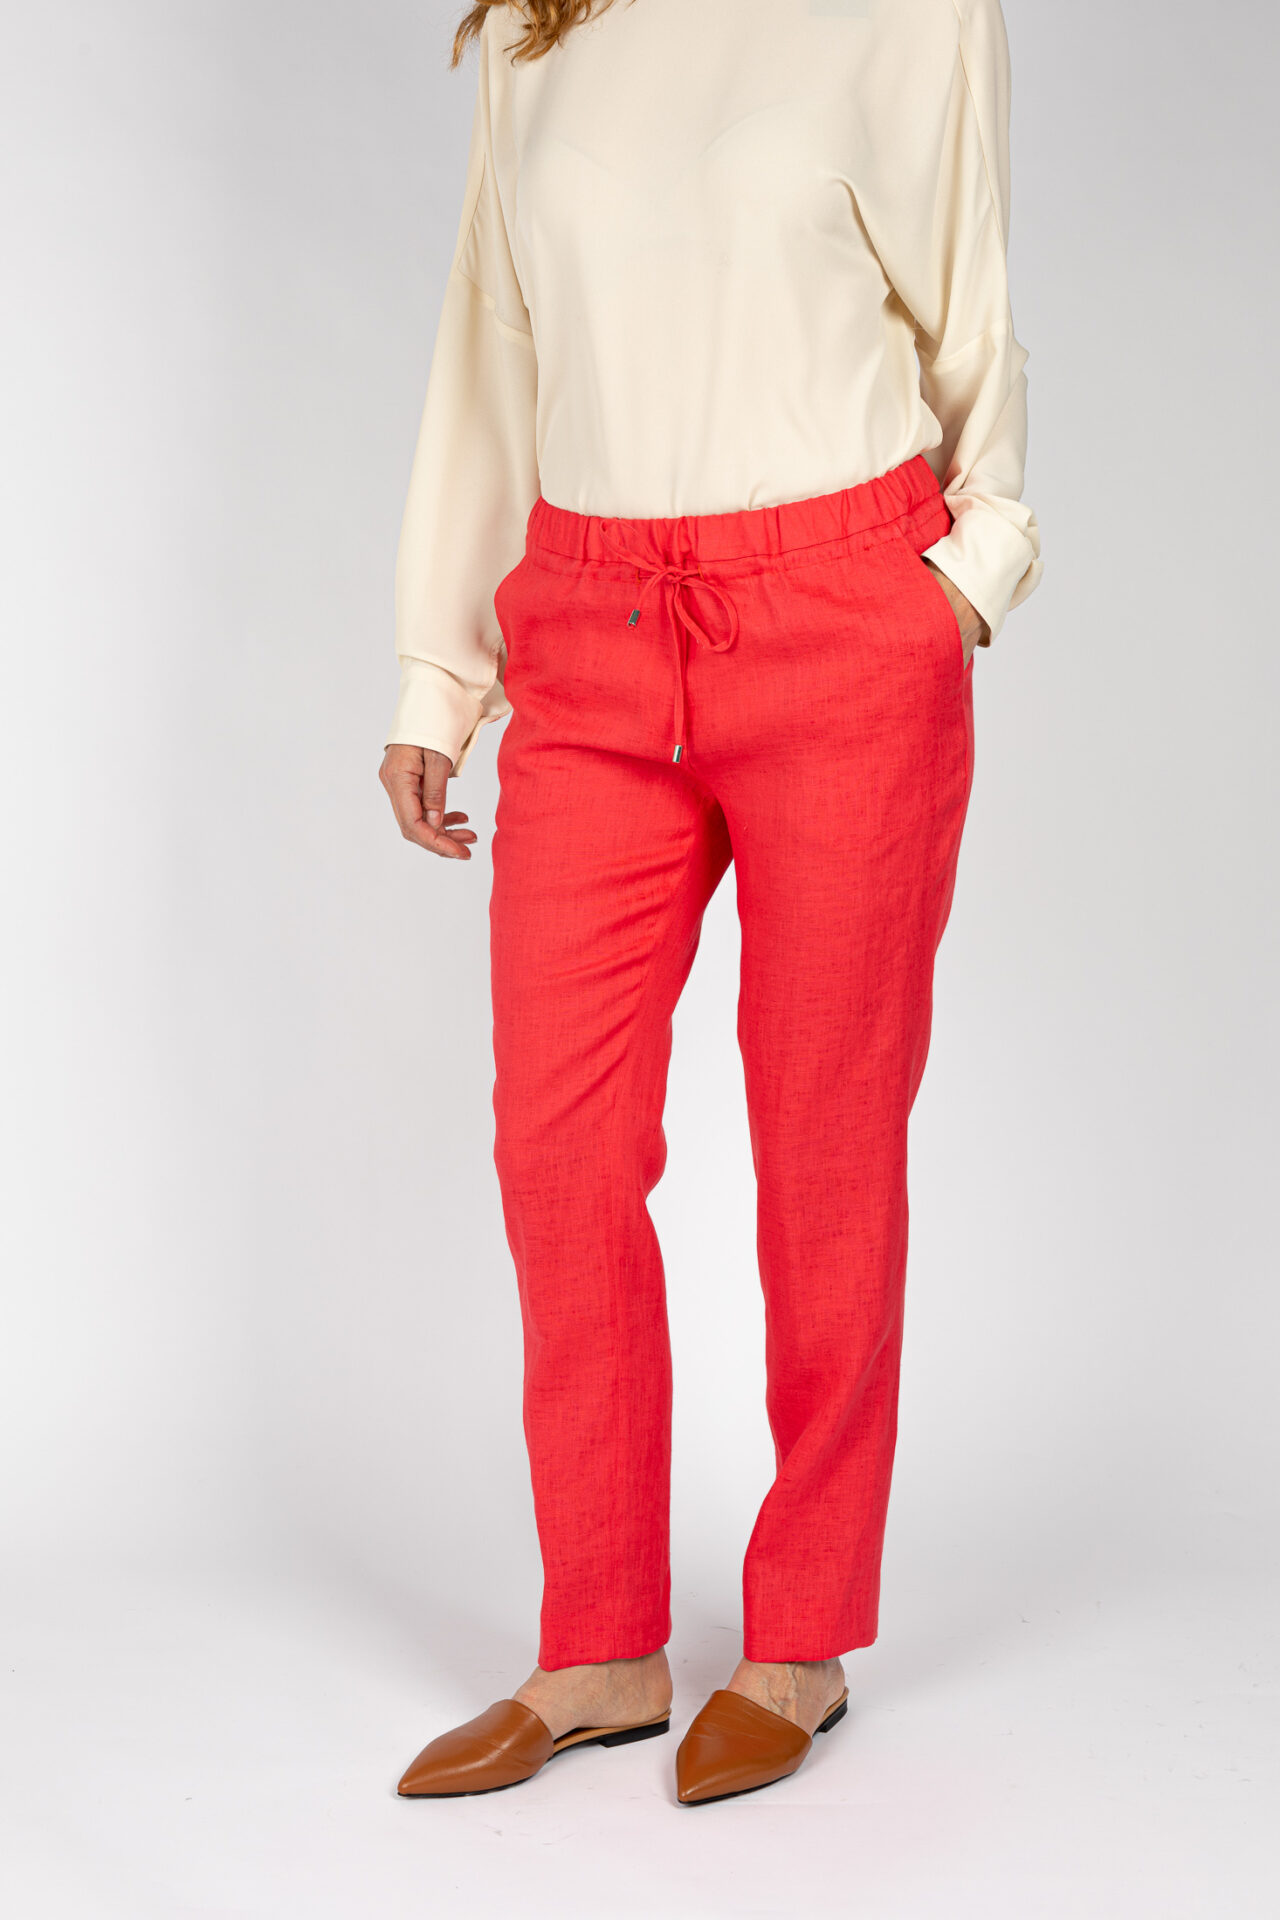 Pantaloni linea morbida, da donna in colore corallo P19667R - 3